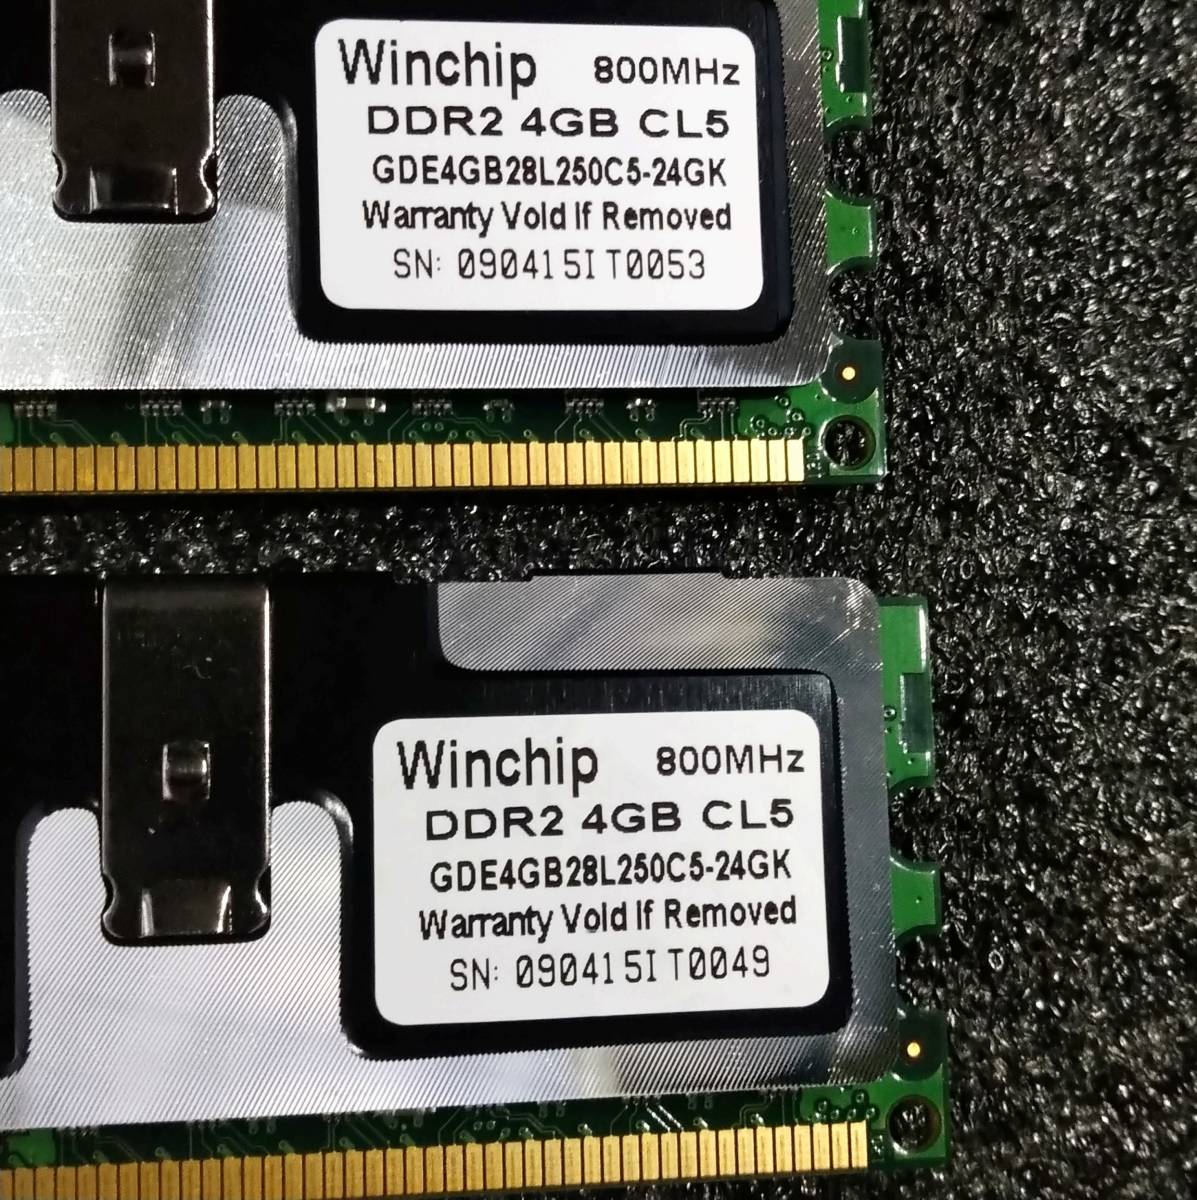 【中古】DDR2メモリ 16GB(4GB4枚組) Whinchip GDE4GB28L250C5-24GK [DDR2-800 PC2-6400]_画像7